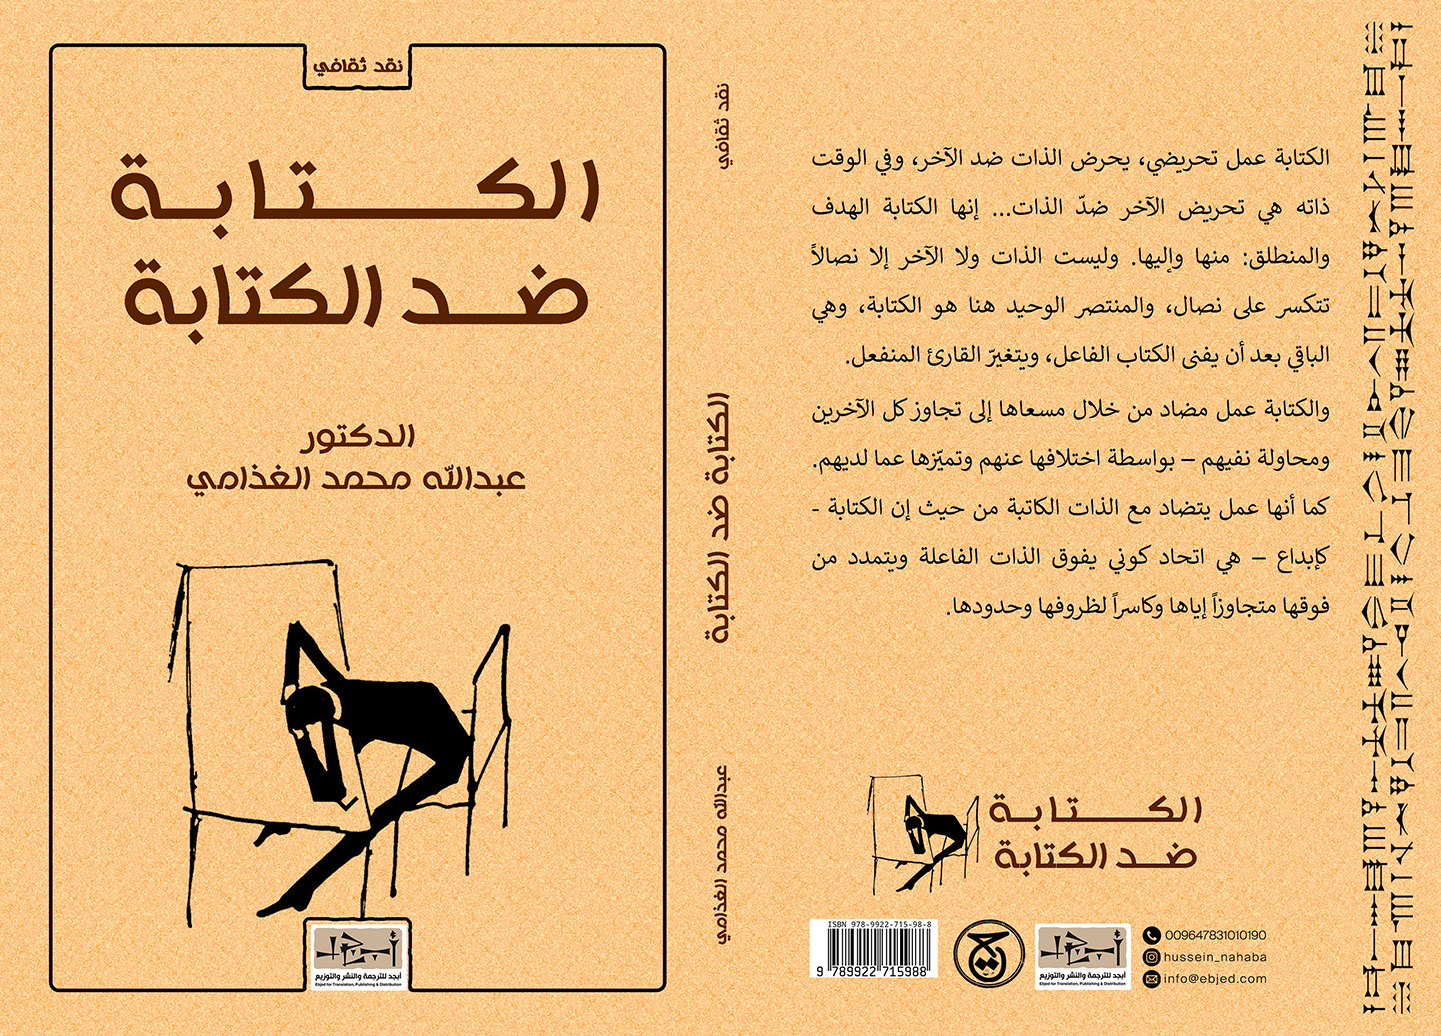 الكتاب: الكتابة ضد الكتابة المؤلف:  الدكتور عبدالله محمد الغذّامي التصنيف: نقد ثقافي